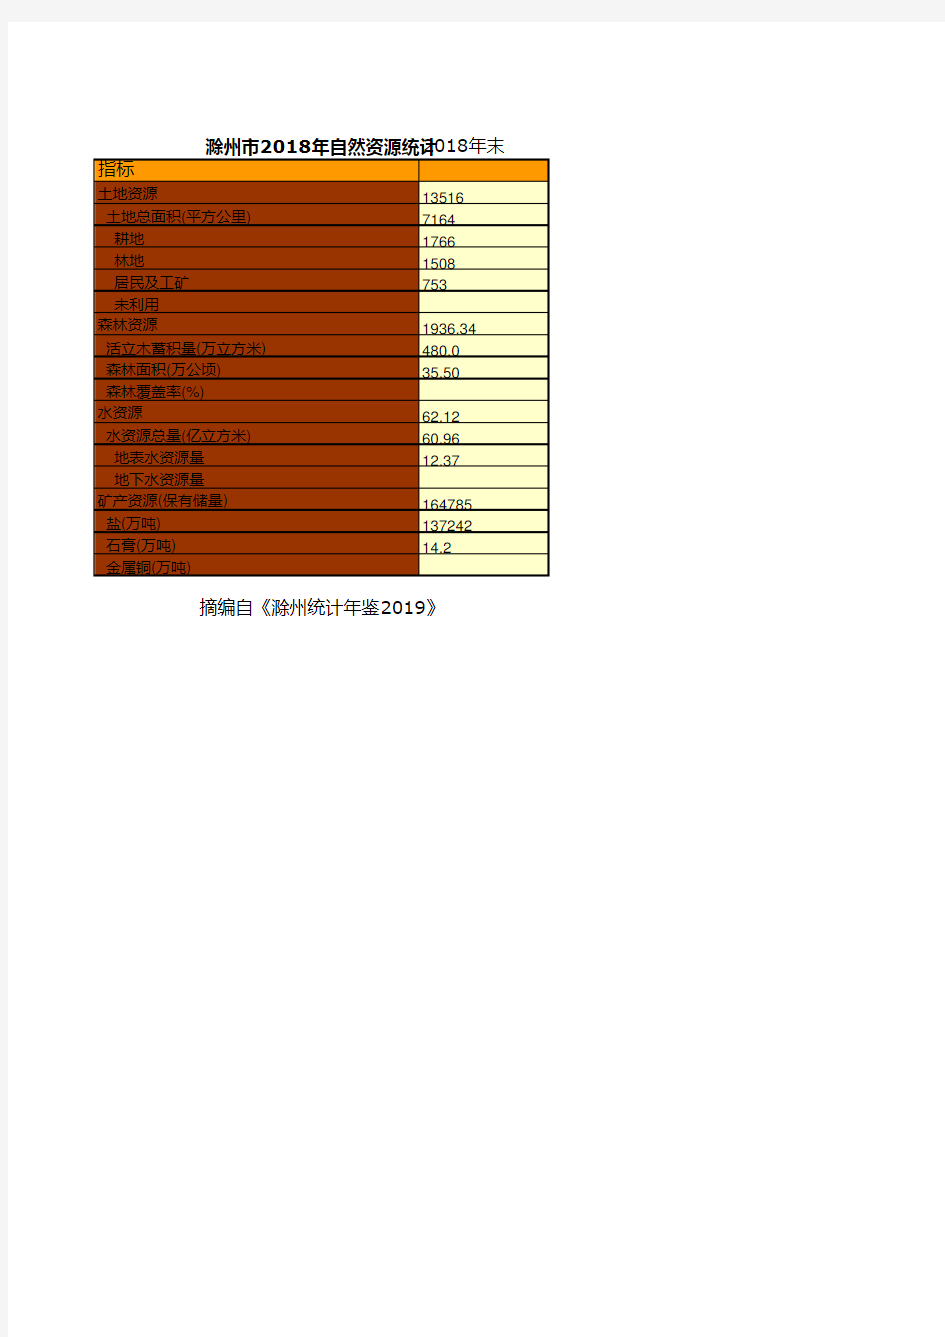 滁州市统计年鉴社会经济发展指标：2018年自然资源统计